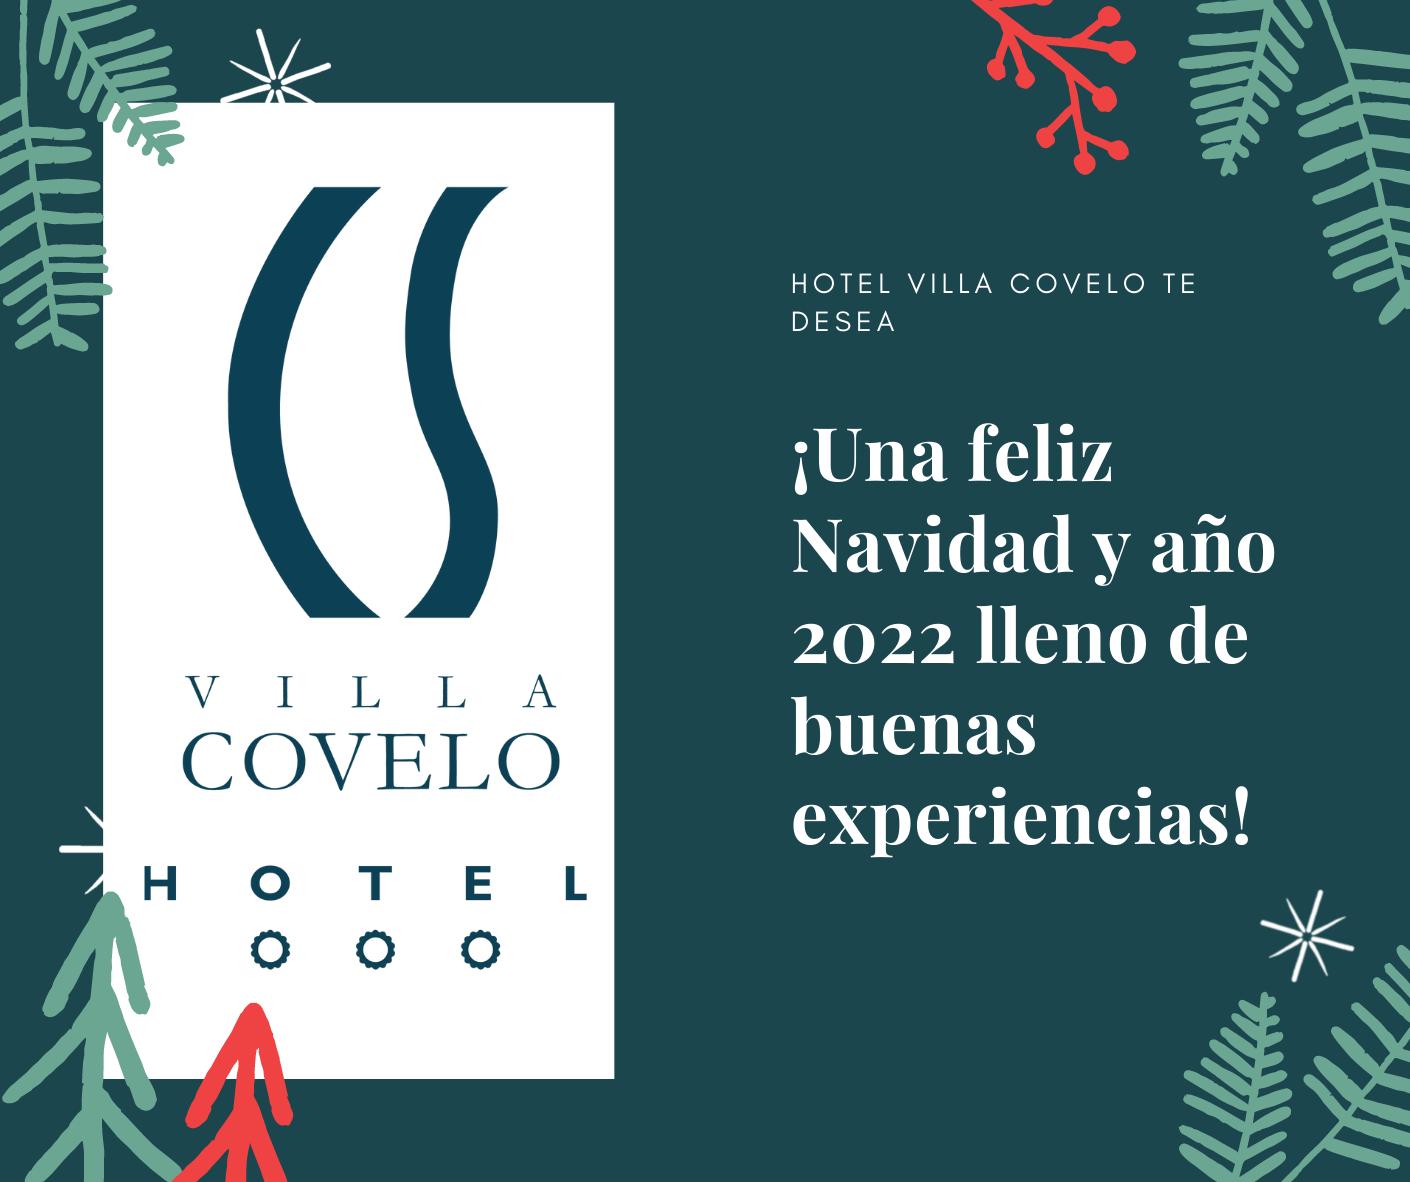 Hotel Villa Covelo te desea una feliz Navidad